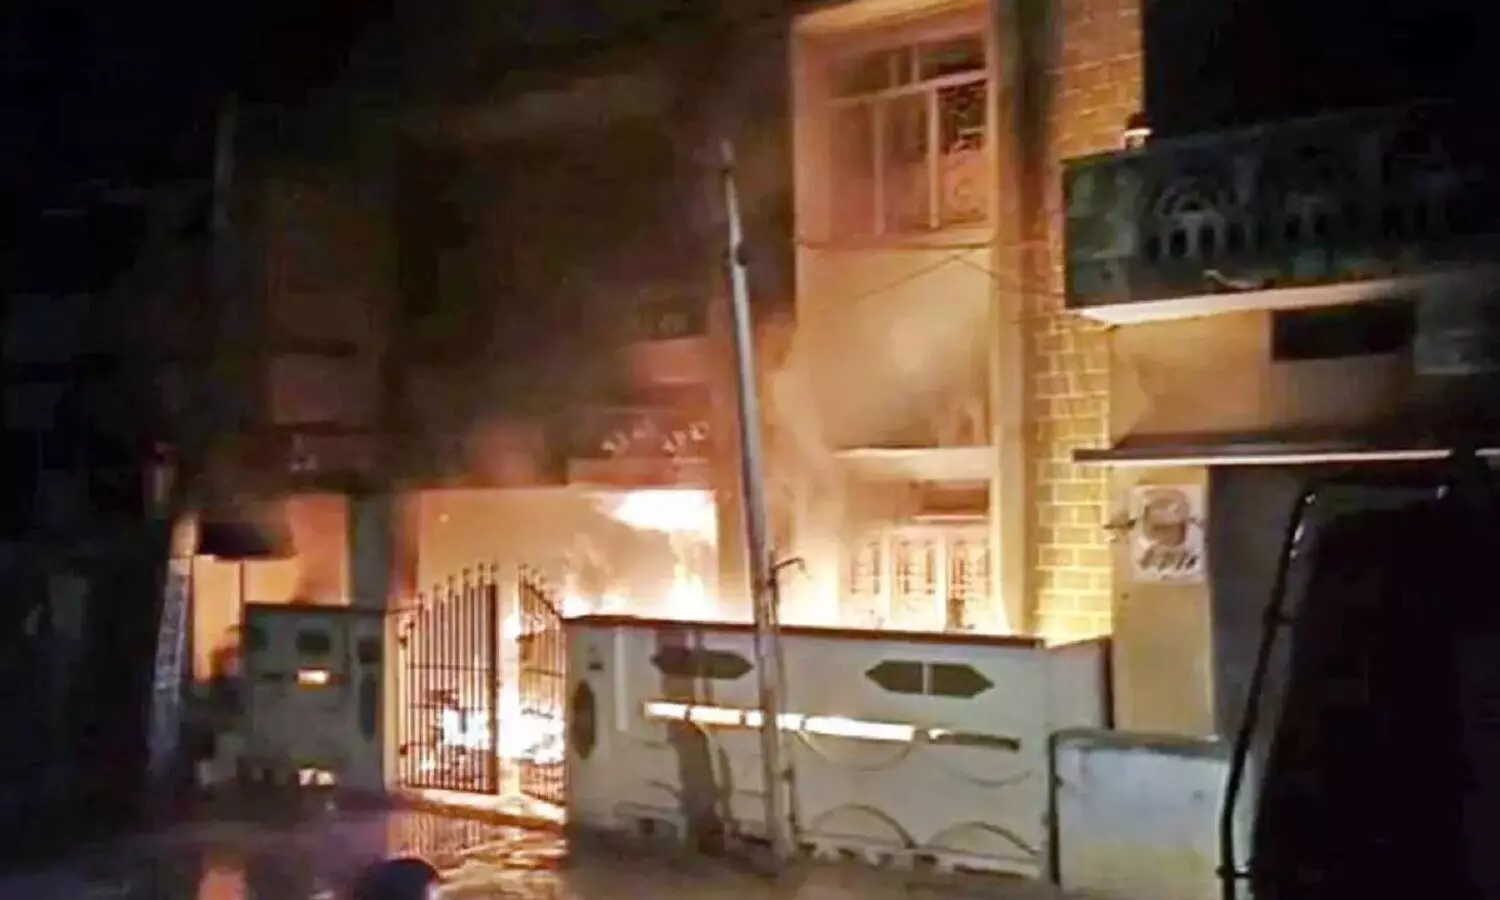 Aandhra Pradesh: फैक्ट्री के अंदर जिंदा जल गए 3 लोग, करोड़ों का नुकसान